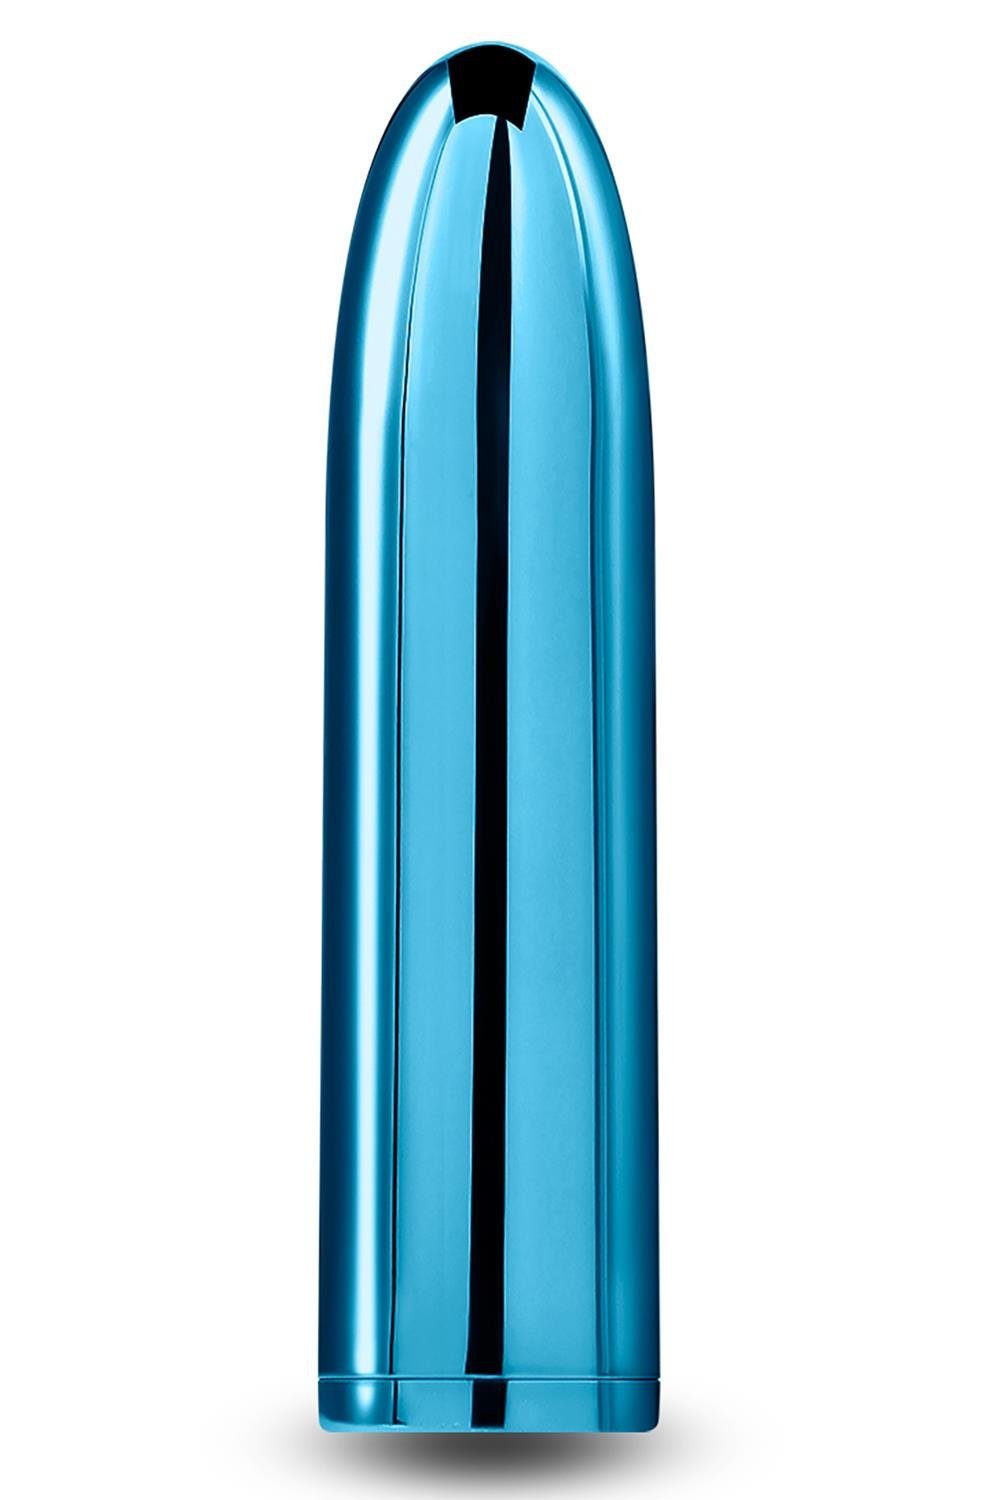 Chroma NS Mini-Vibrator Teal Bullet Novelties Petite